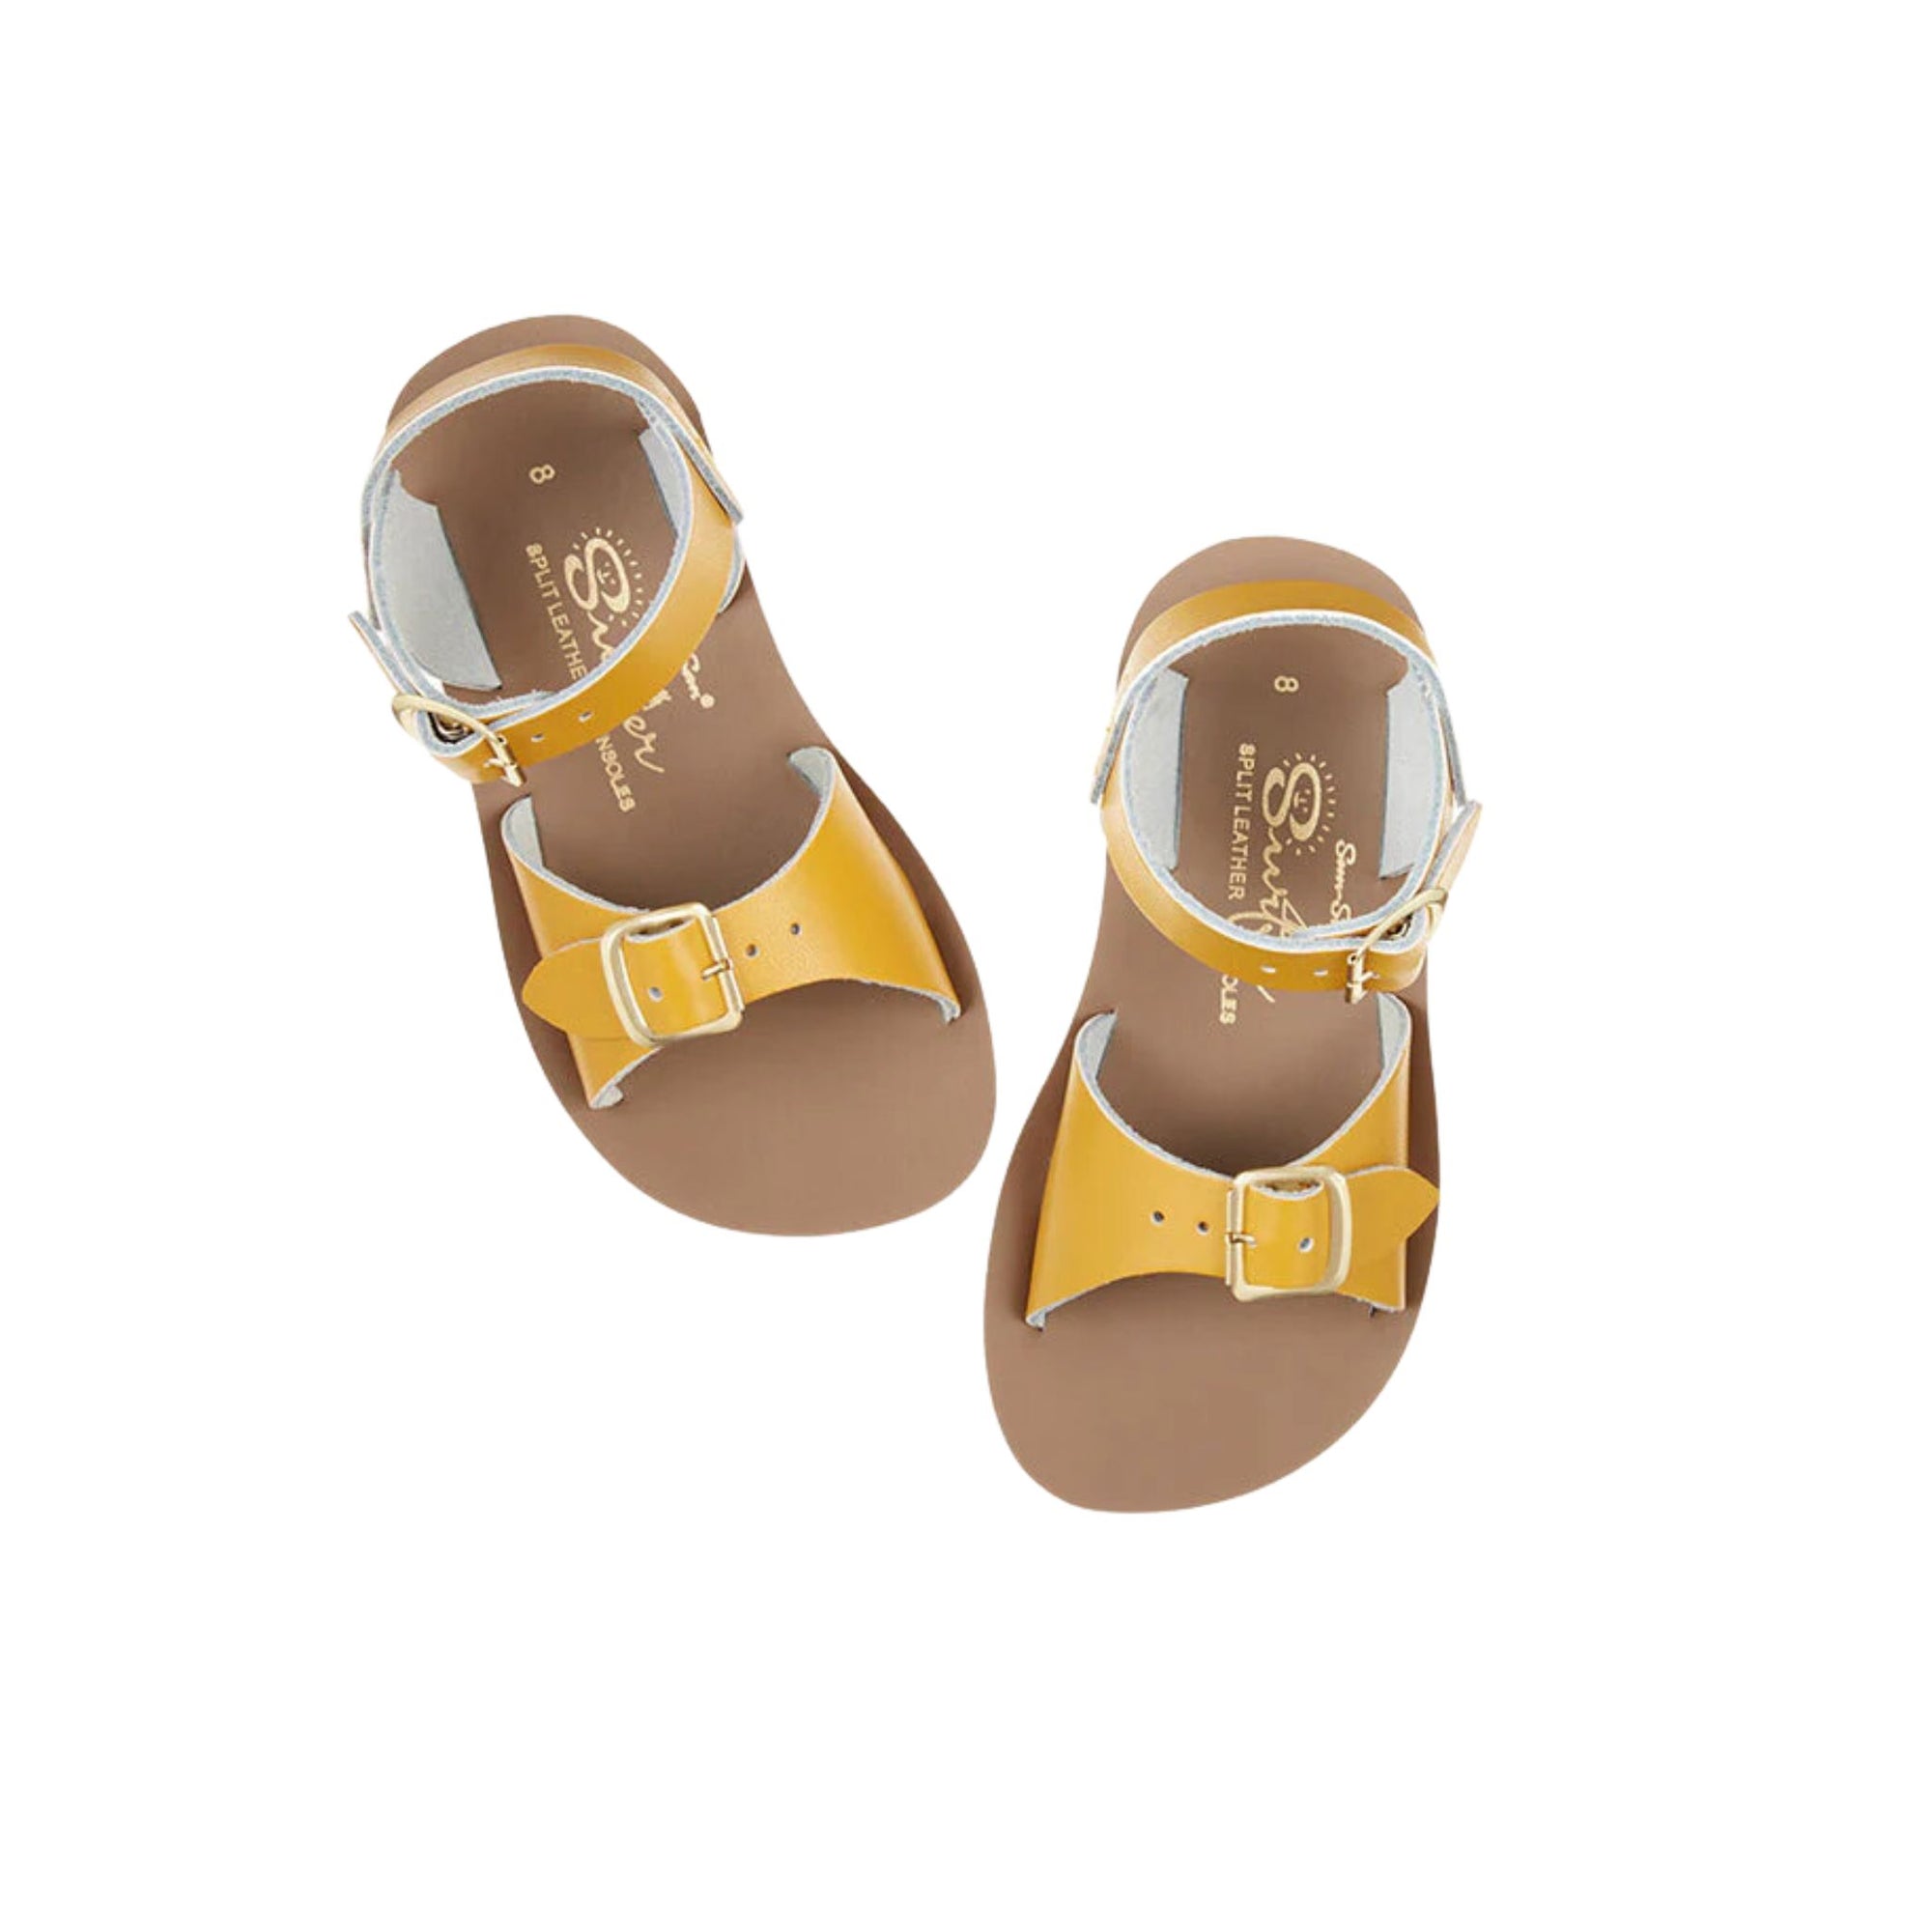 Salt-water Sandals Surfer Sandals - Mustard